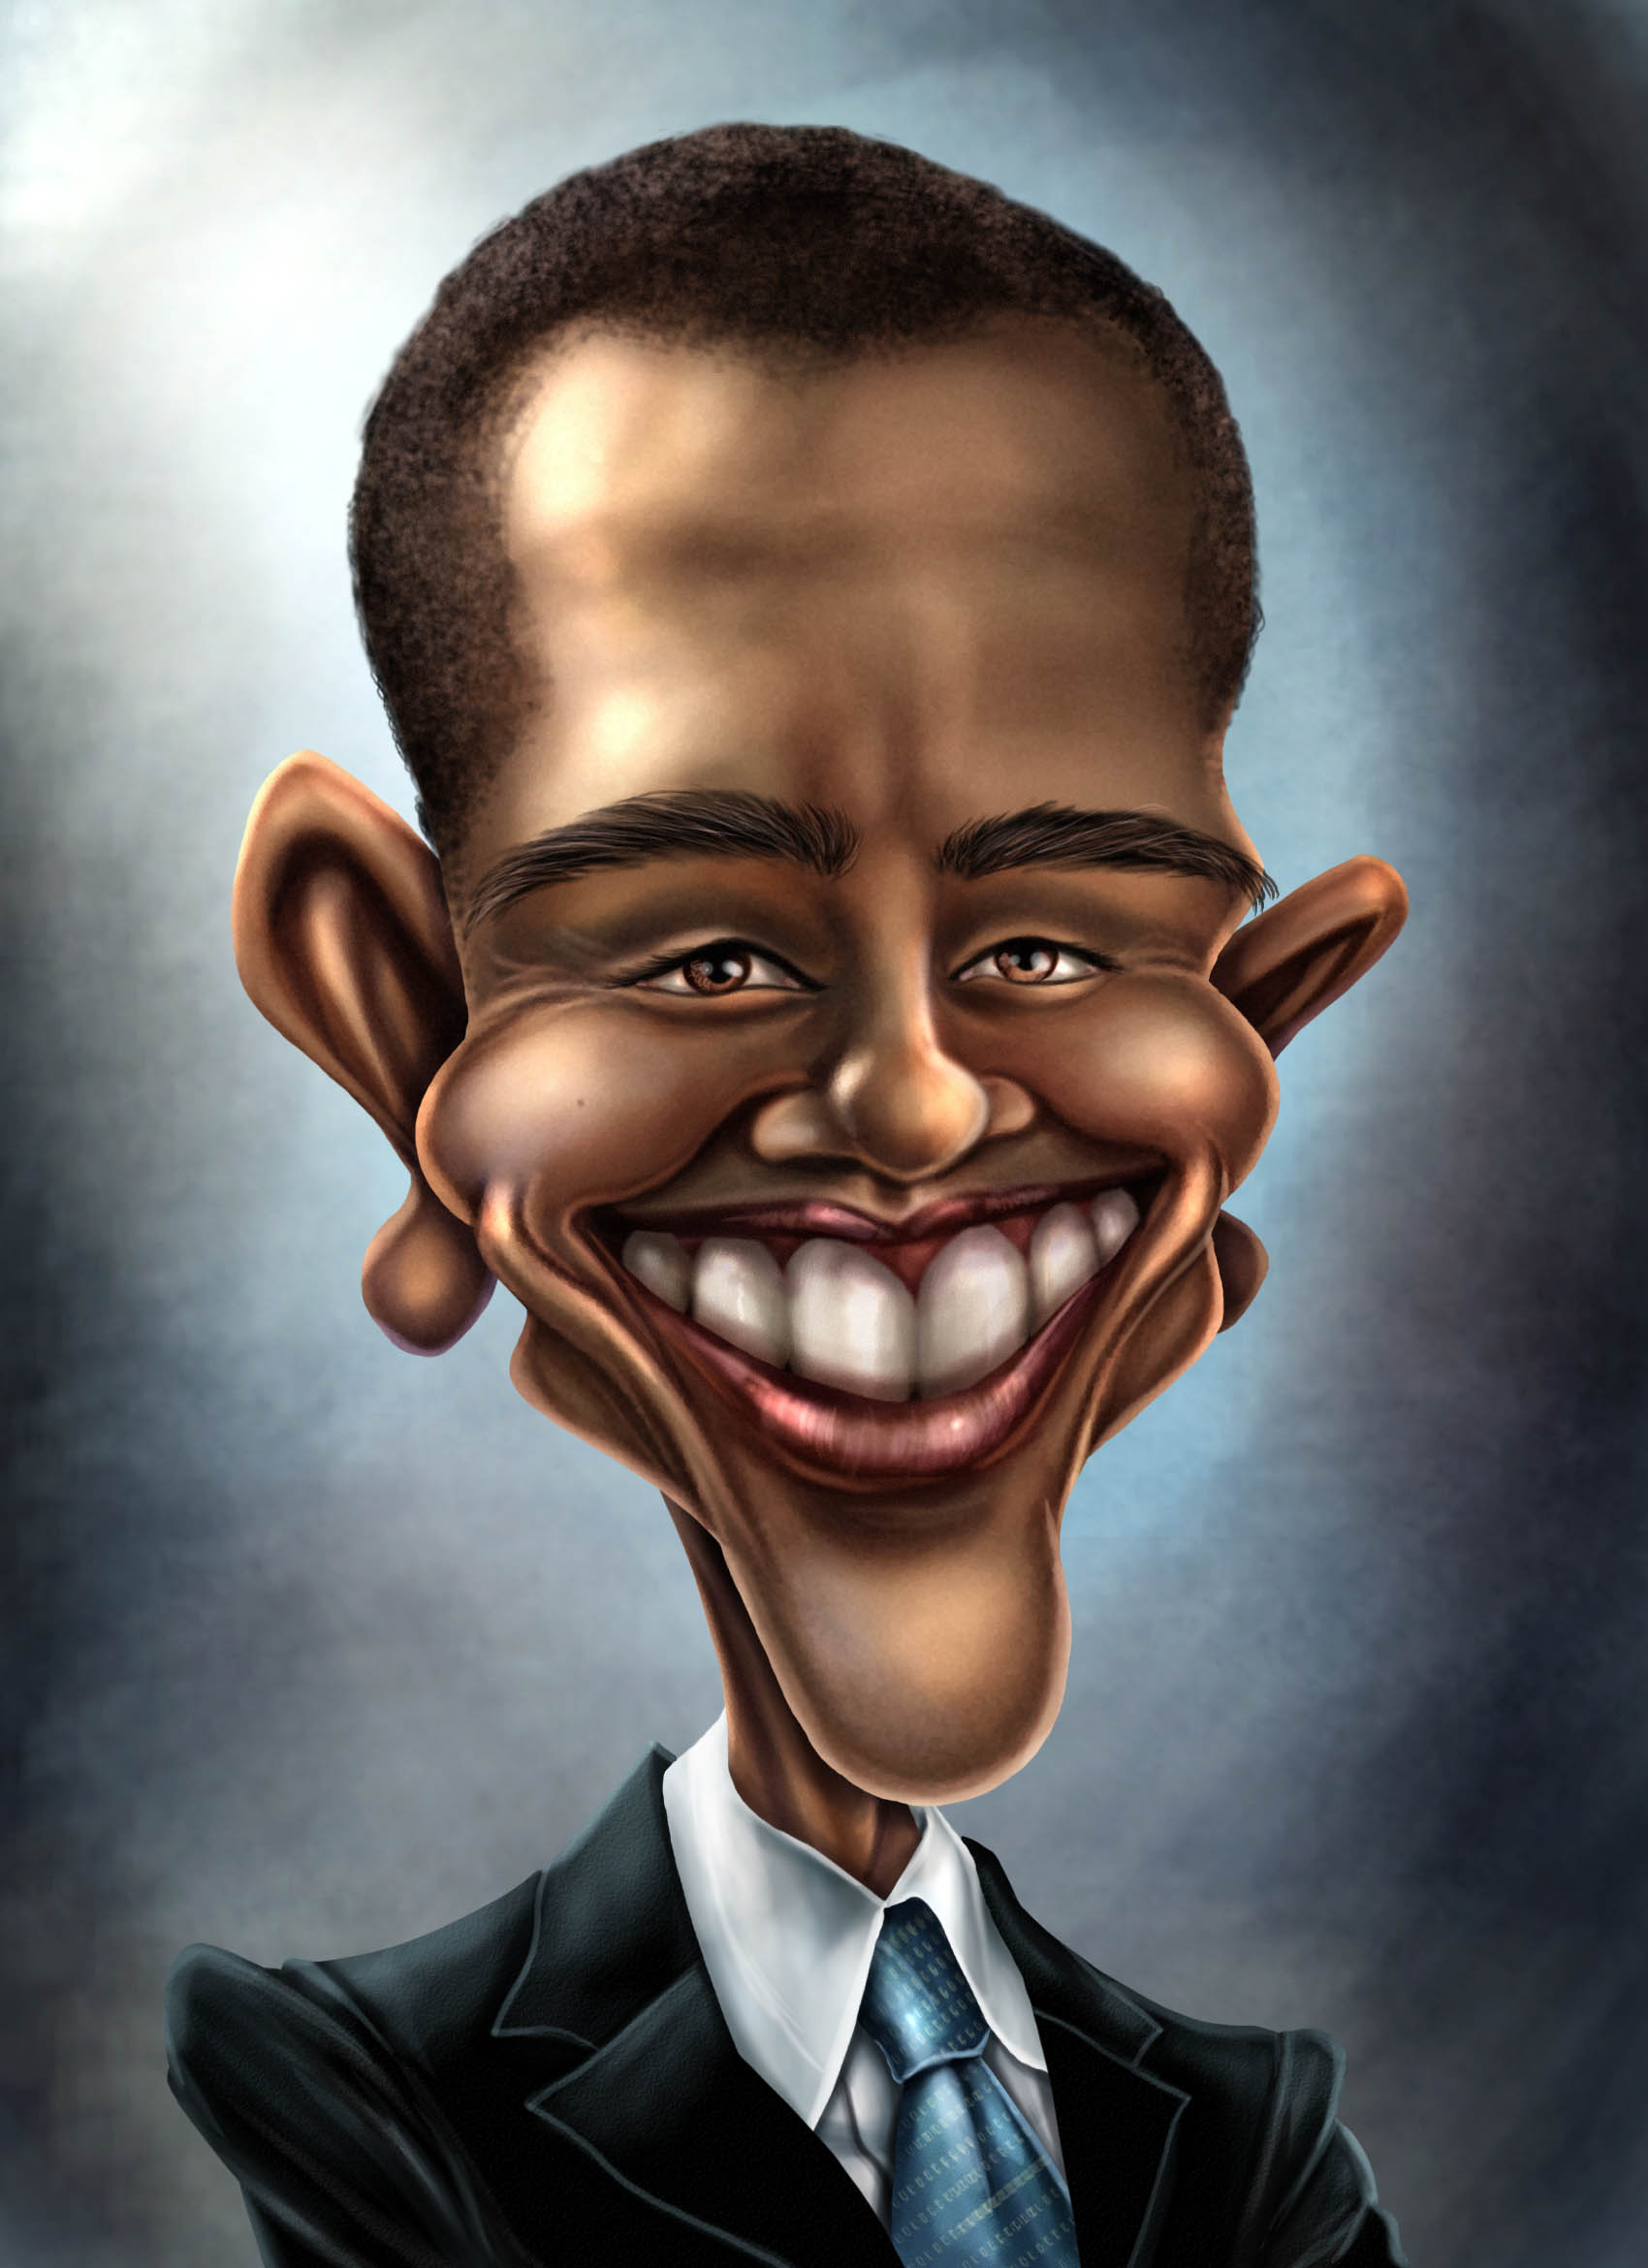 Сатирический образ шарж. Сатирический портрет Обама. Карикатурные портреты Обамы. Сатирические образы человека. Сатиричечкие образ человека.